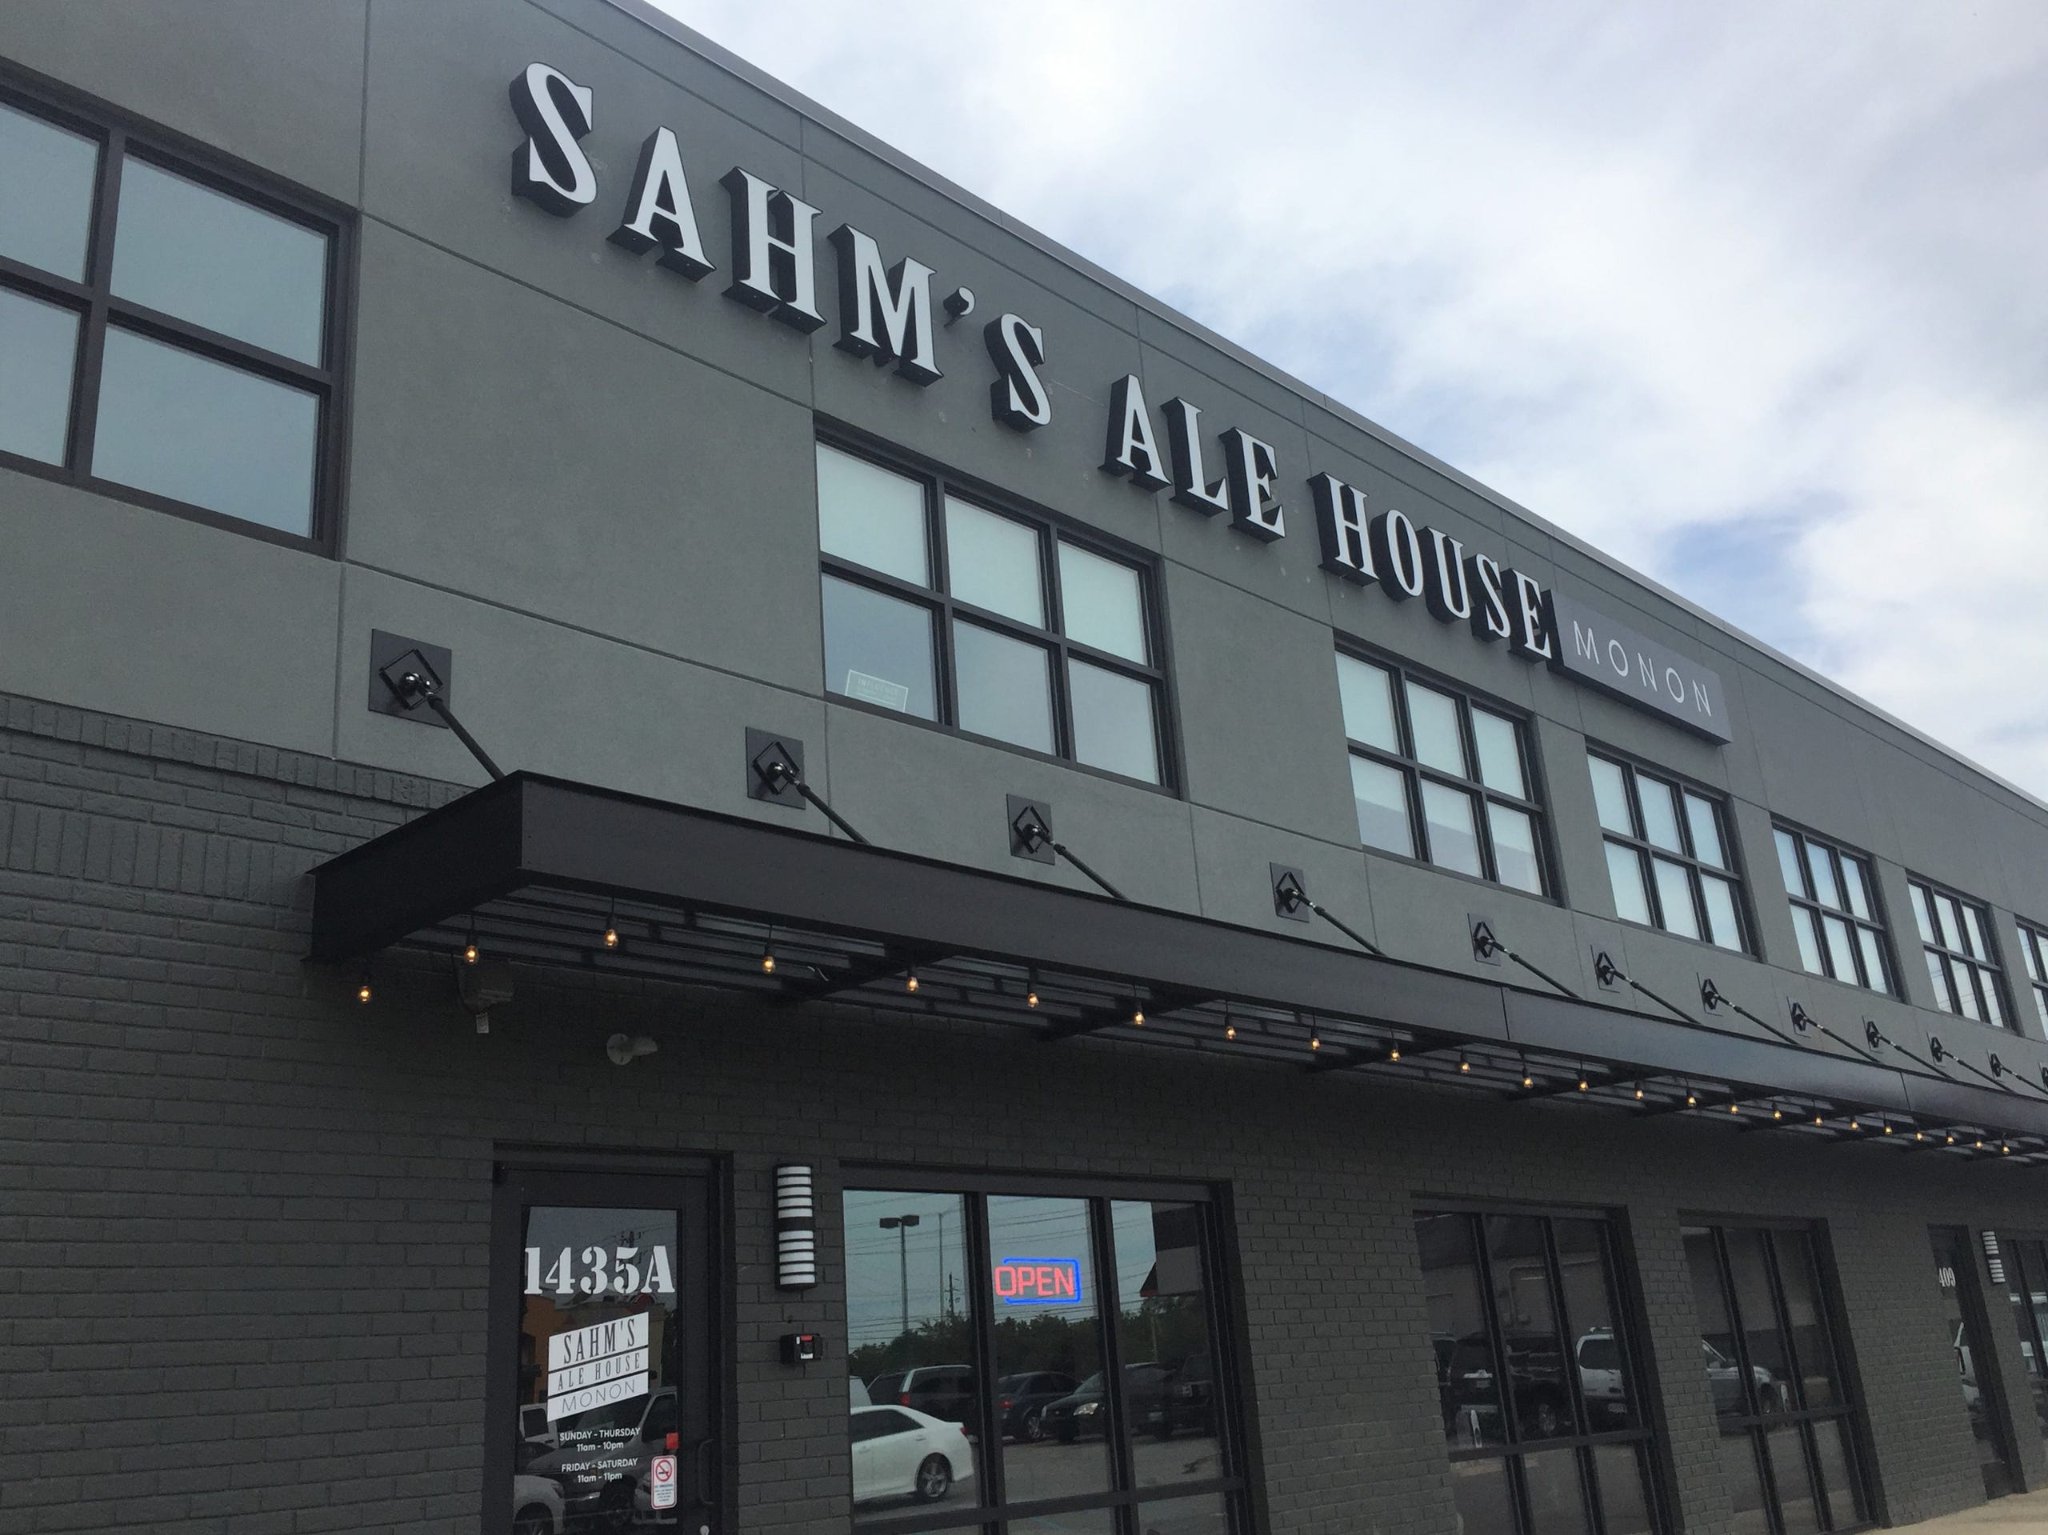 Sahm's Ale House